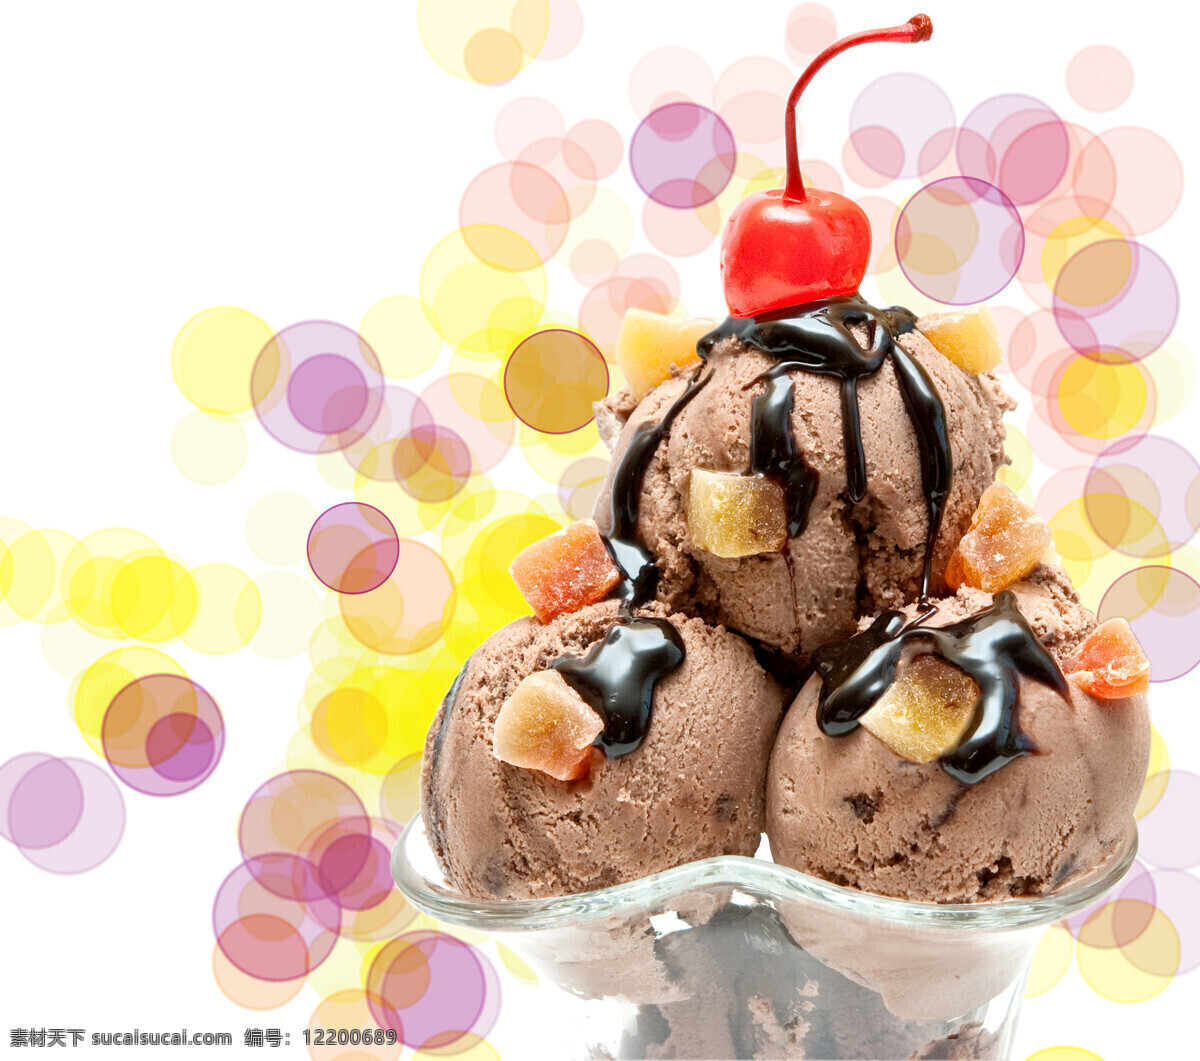 梦幻 光斑 冰淇淋 冰激凌 甜品 美食 美味 食物摄影 美食图片 餐饮美食